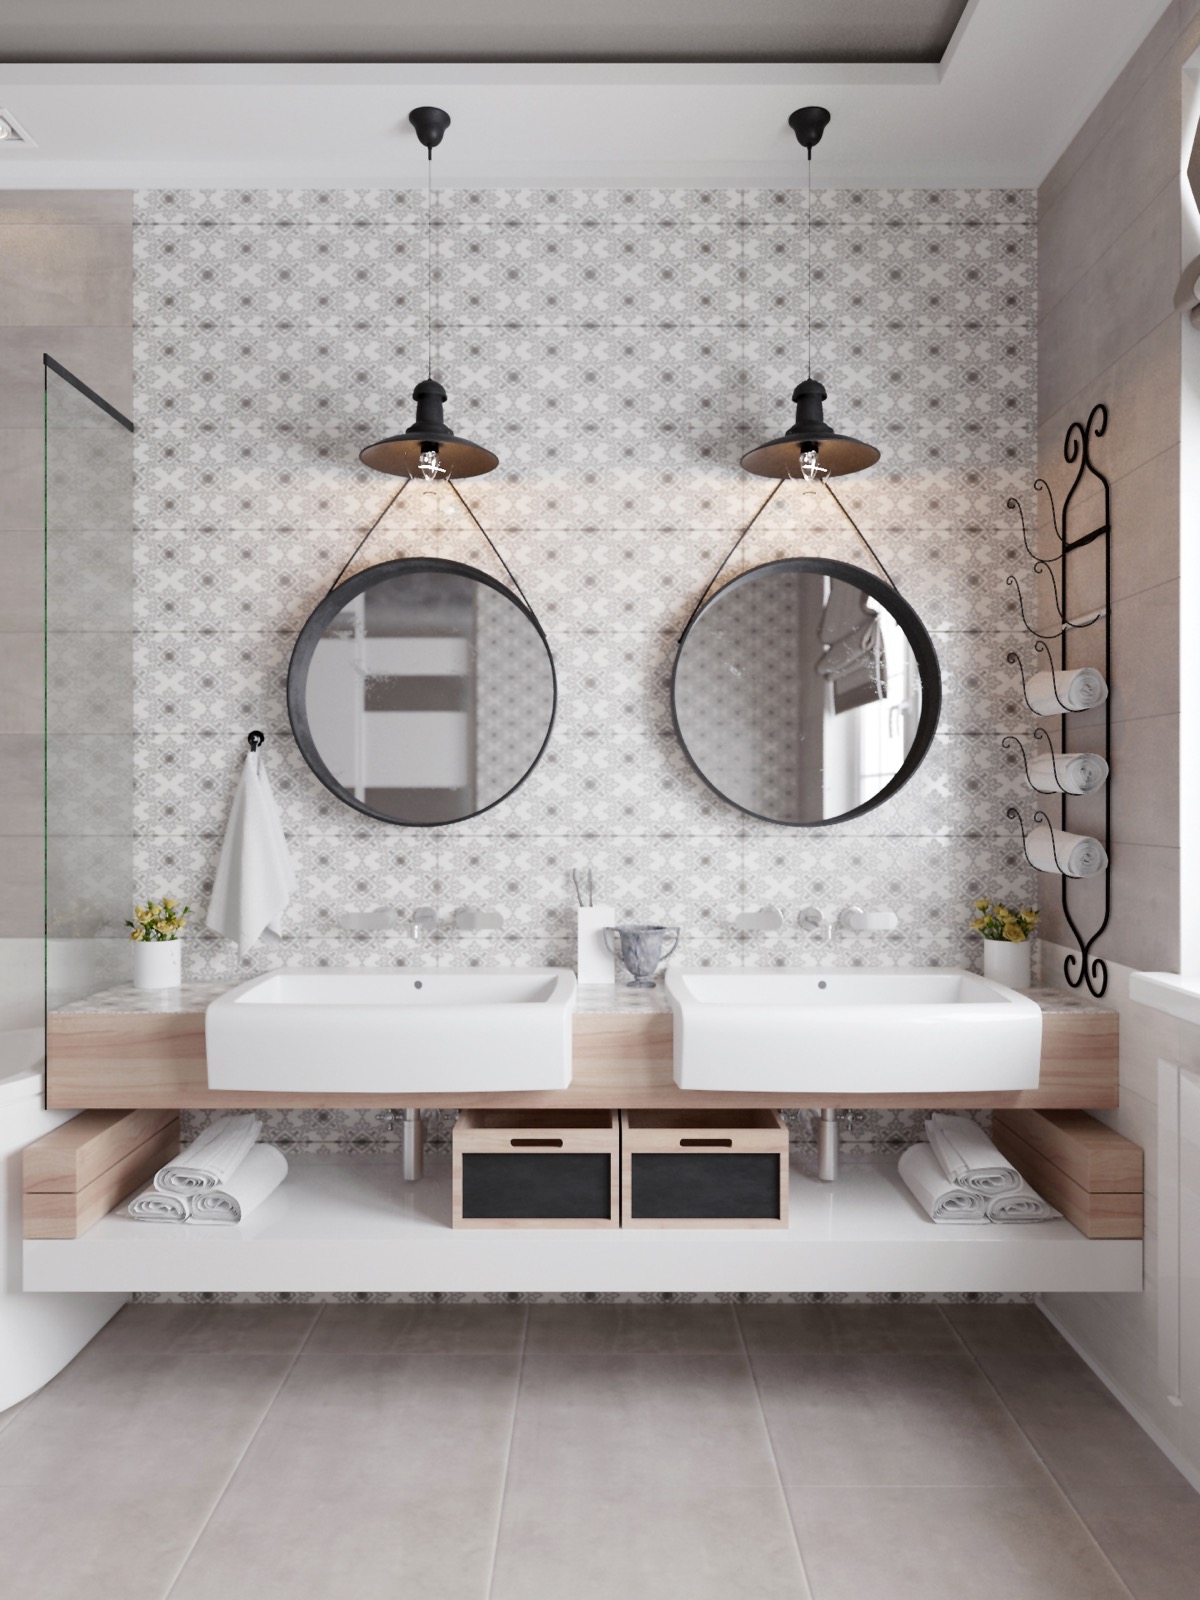 40 Double Sink Bathroom Vanities, Double Vanity Bathroom Layout